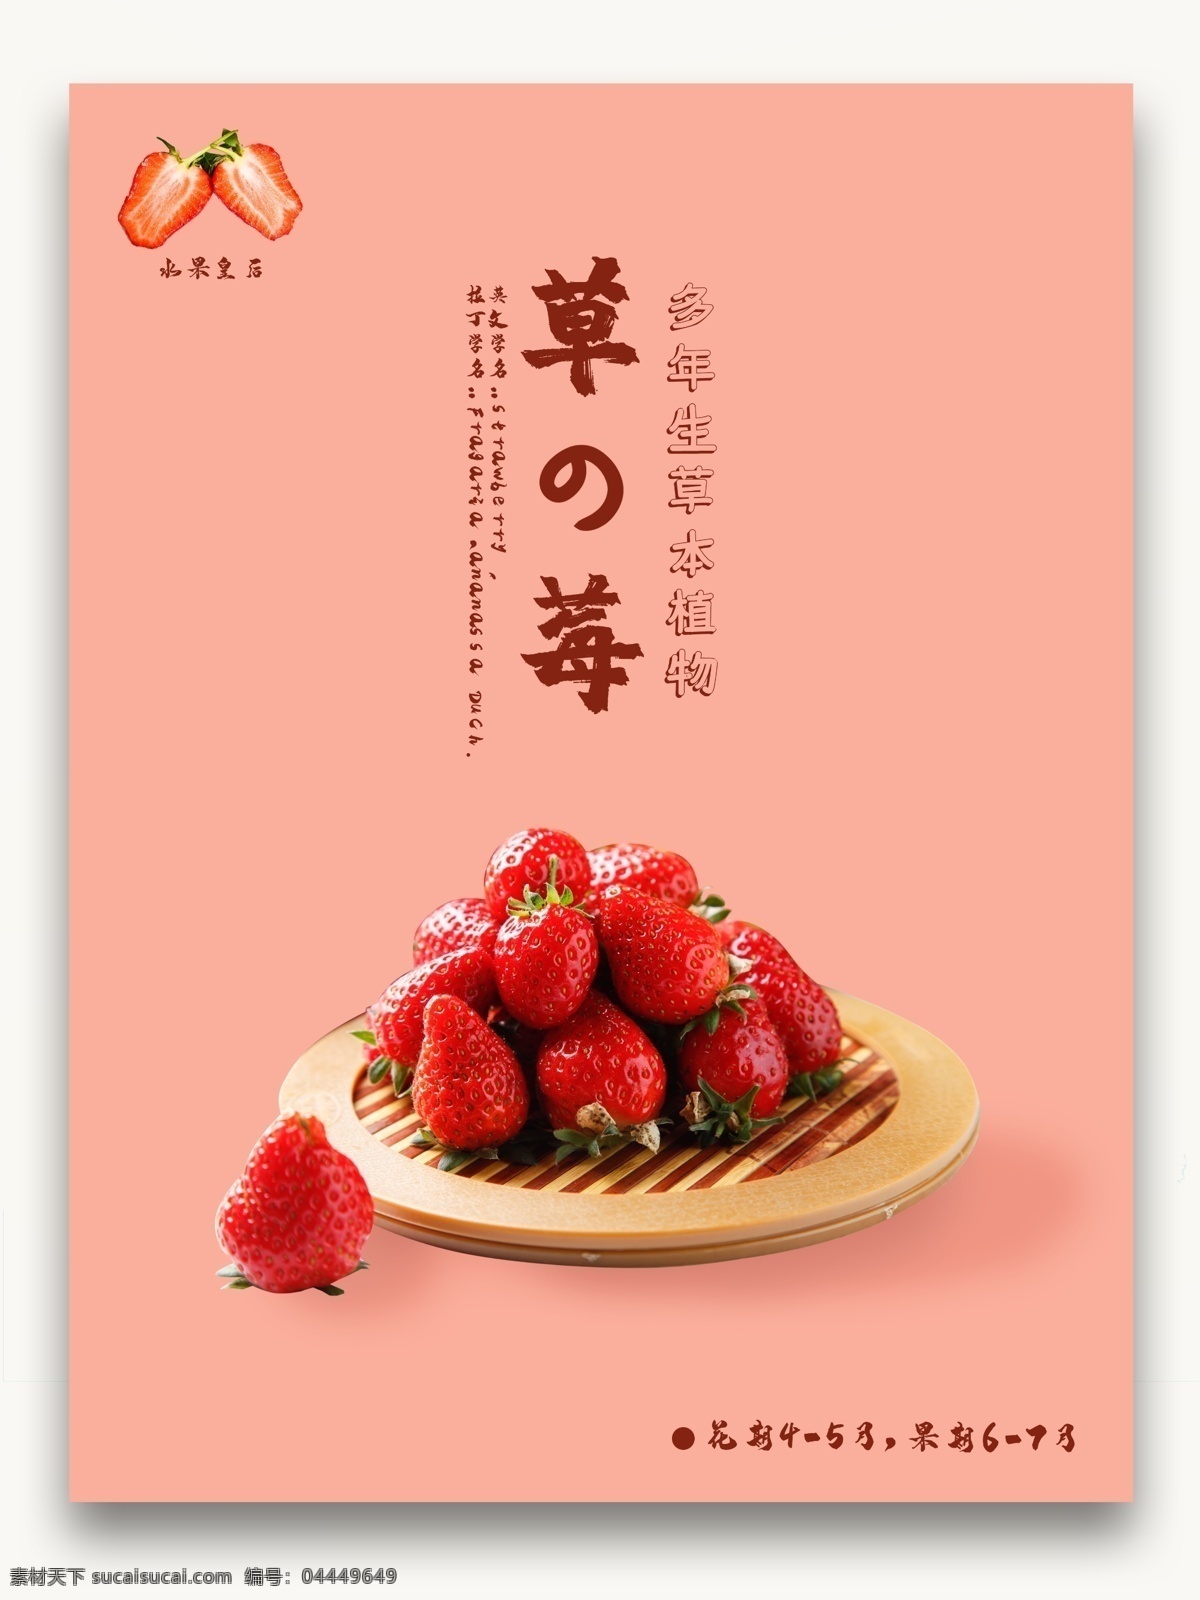 原创 日 系 简洁 食物 美食 新鲜 草莓 平面广告 海报 日系 水果 植物 新鲜草莓 广告